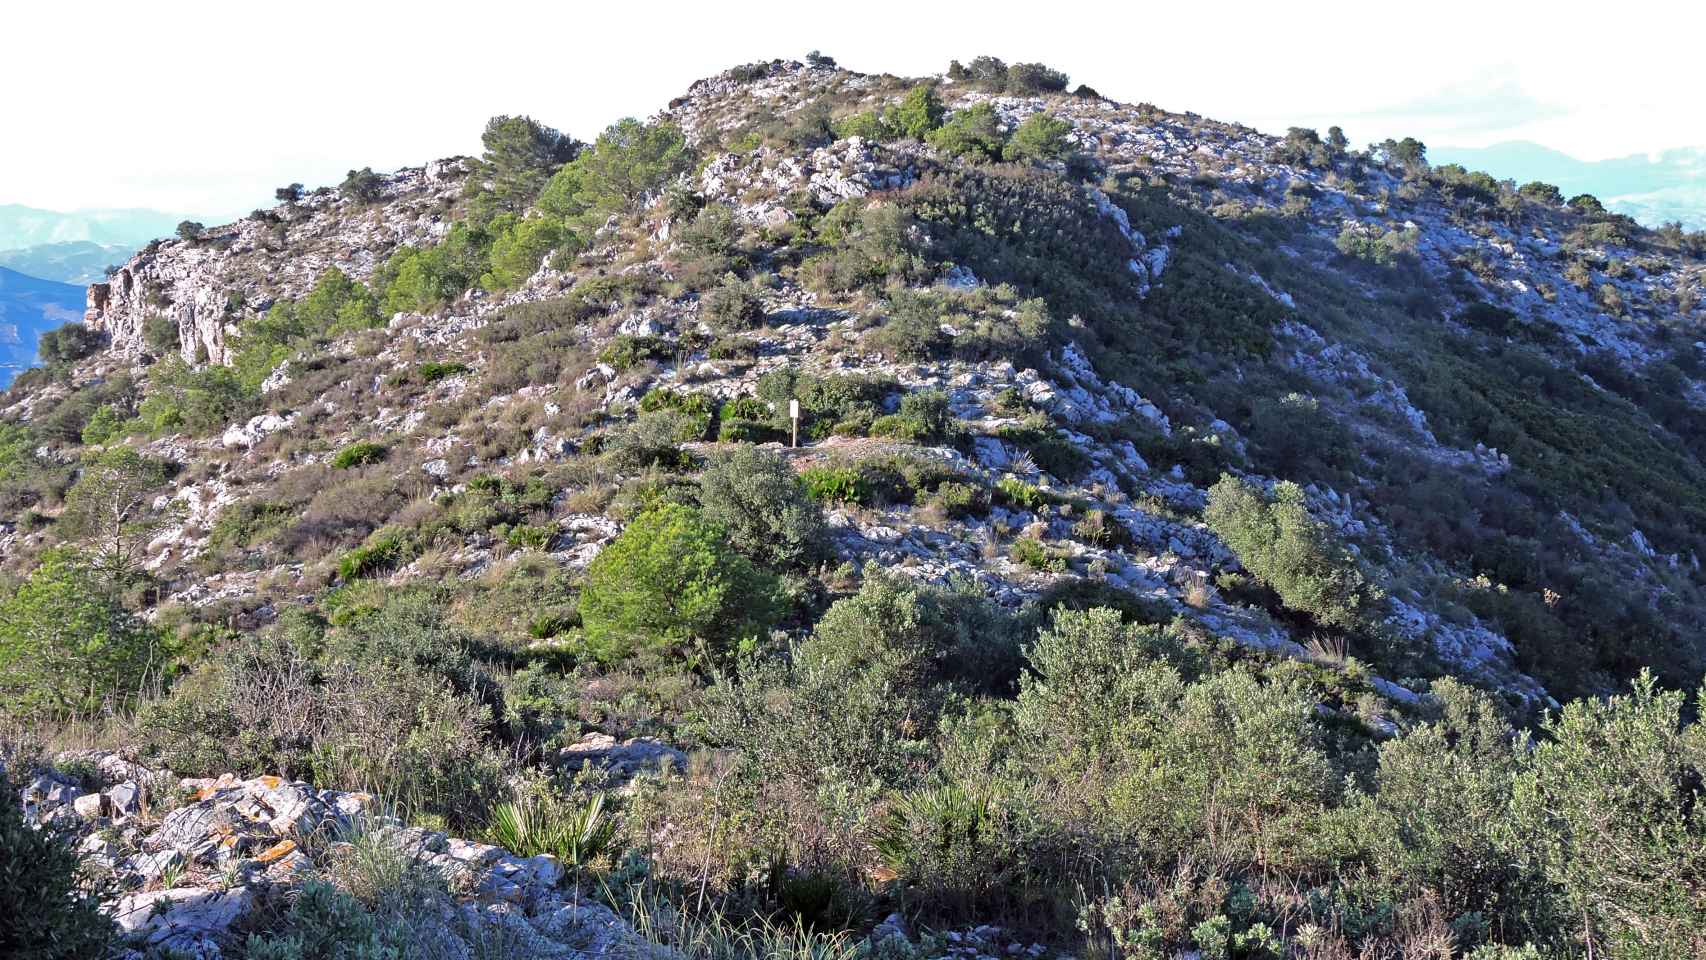 La cima del monte Jabalcuza es escarpada y está pelada.